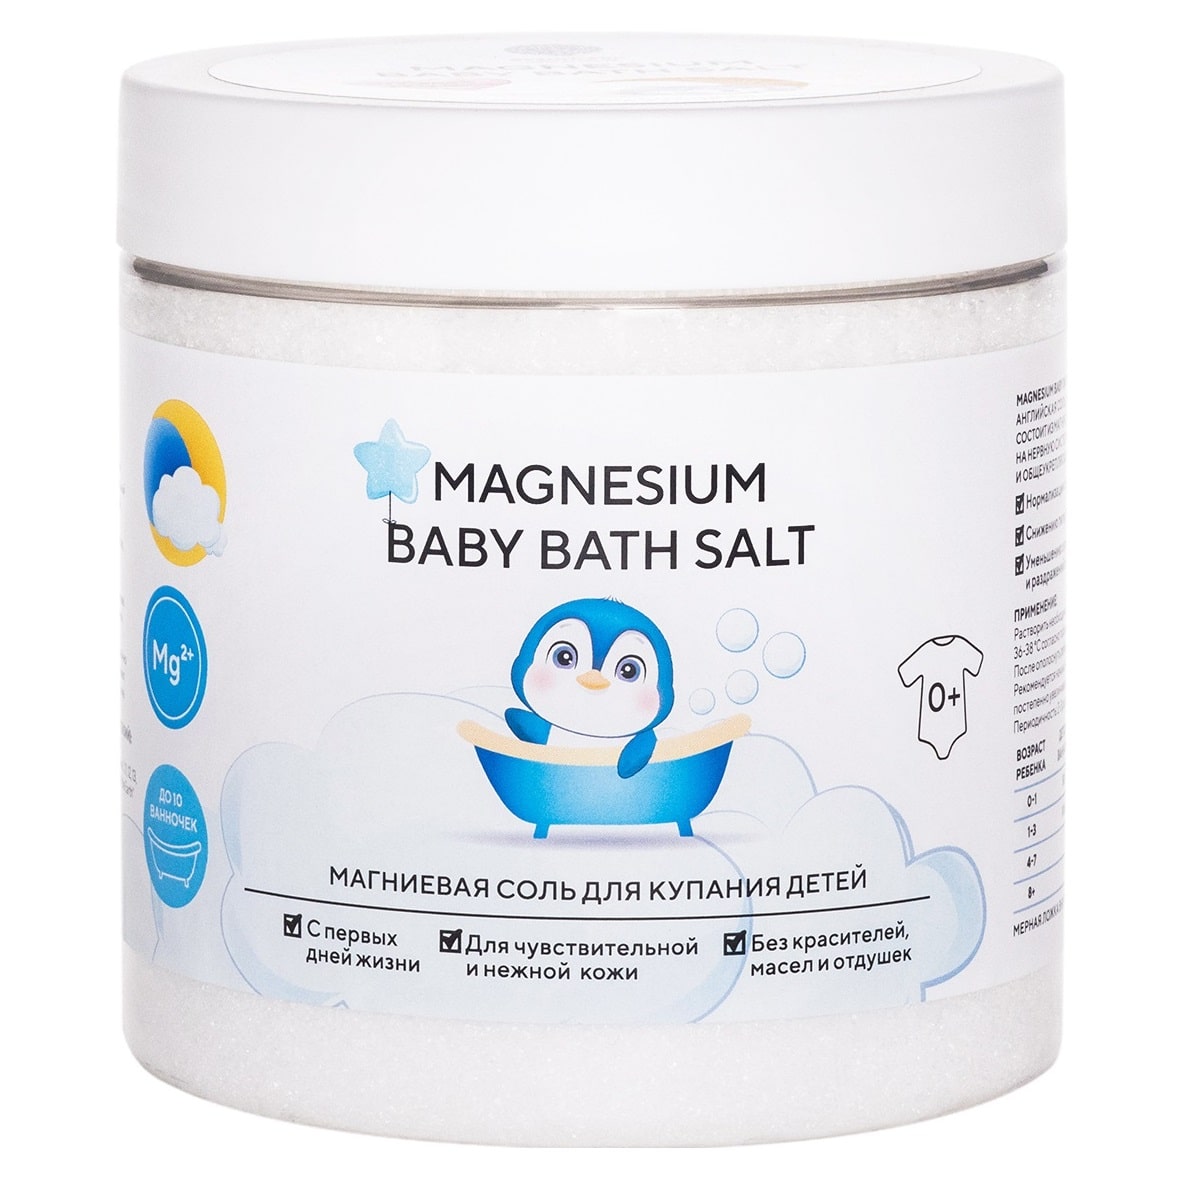 Epsom.pro Магниевая соль для купания детей 0+ Magnesium Baby Bath Salt, 500 г (Epsom.pro, Для ванны)